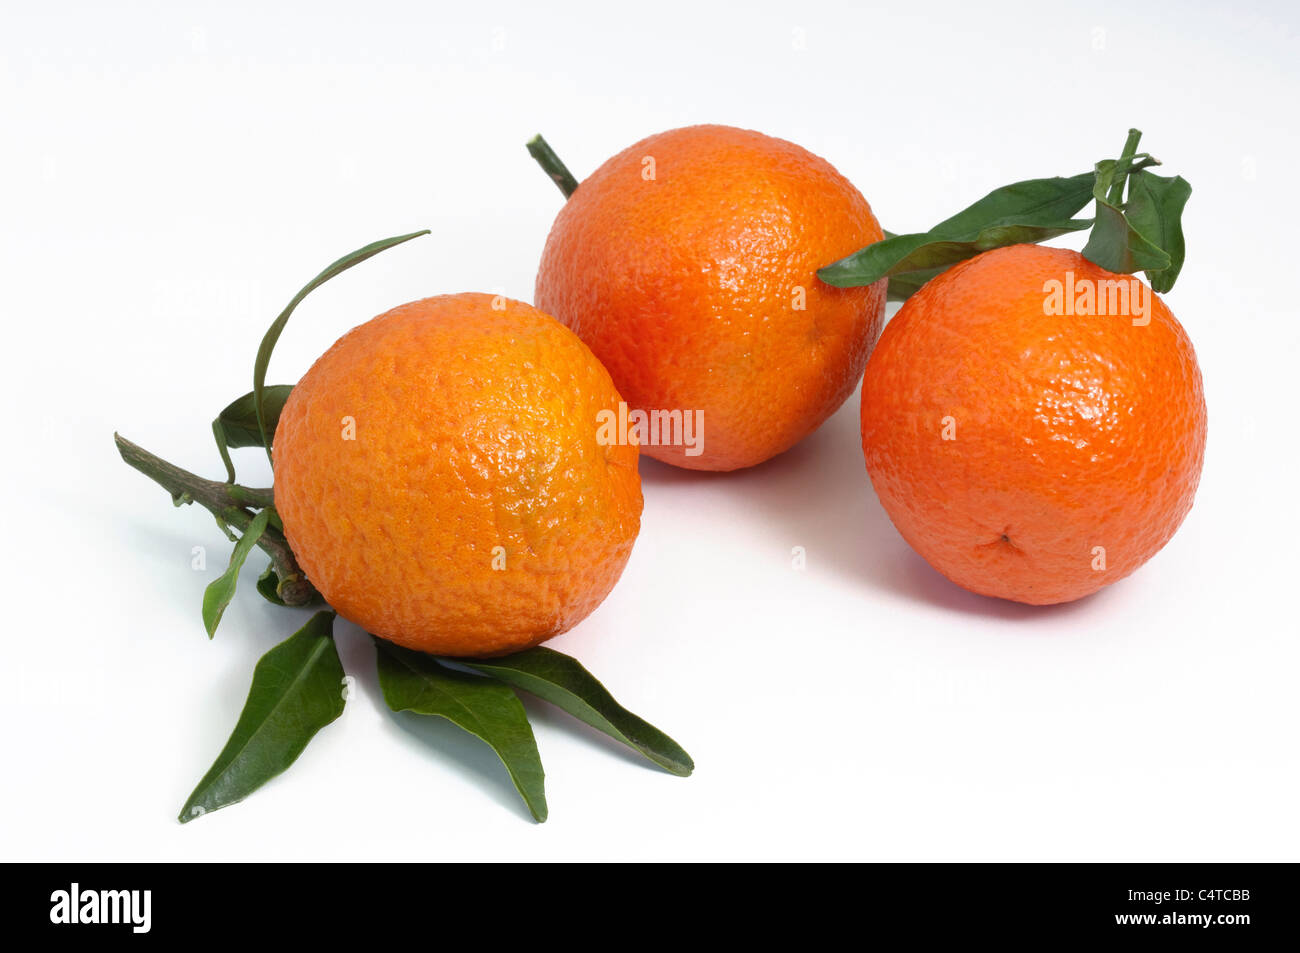 Clementine (Citrus deliciosa), ripe fruit, studio picture. Stock Photo